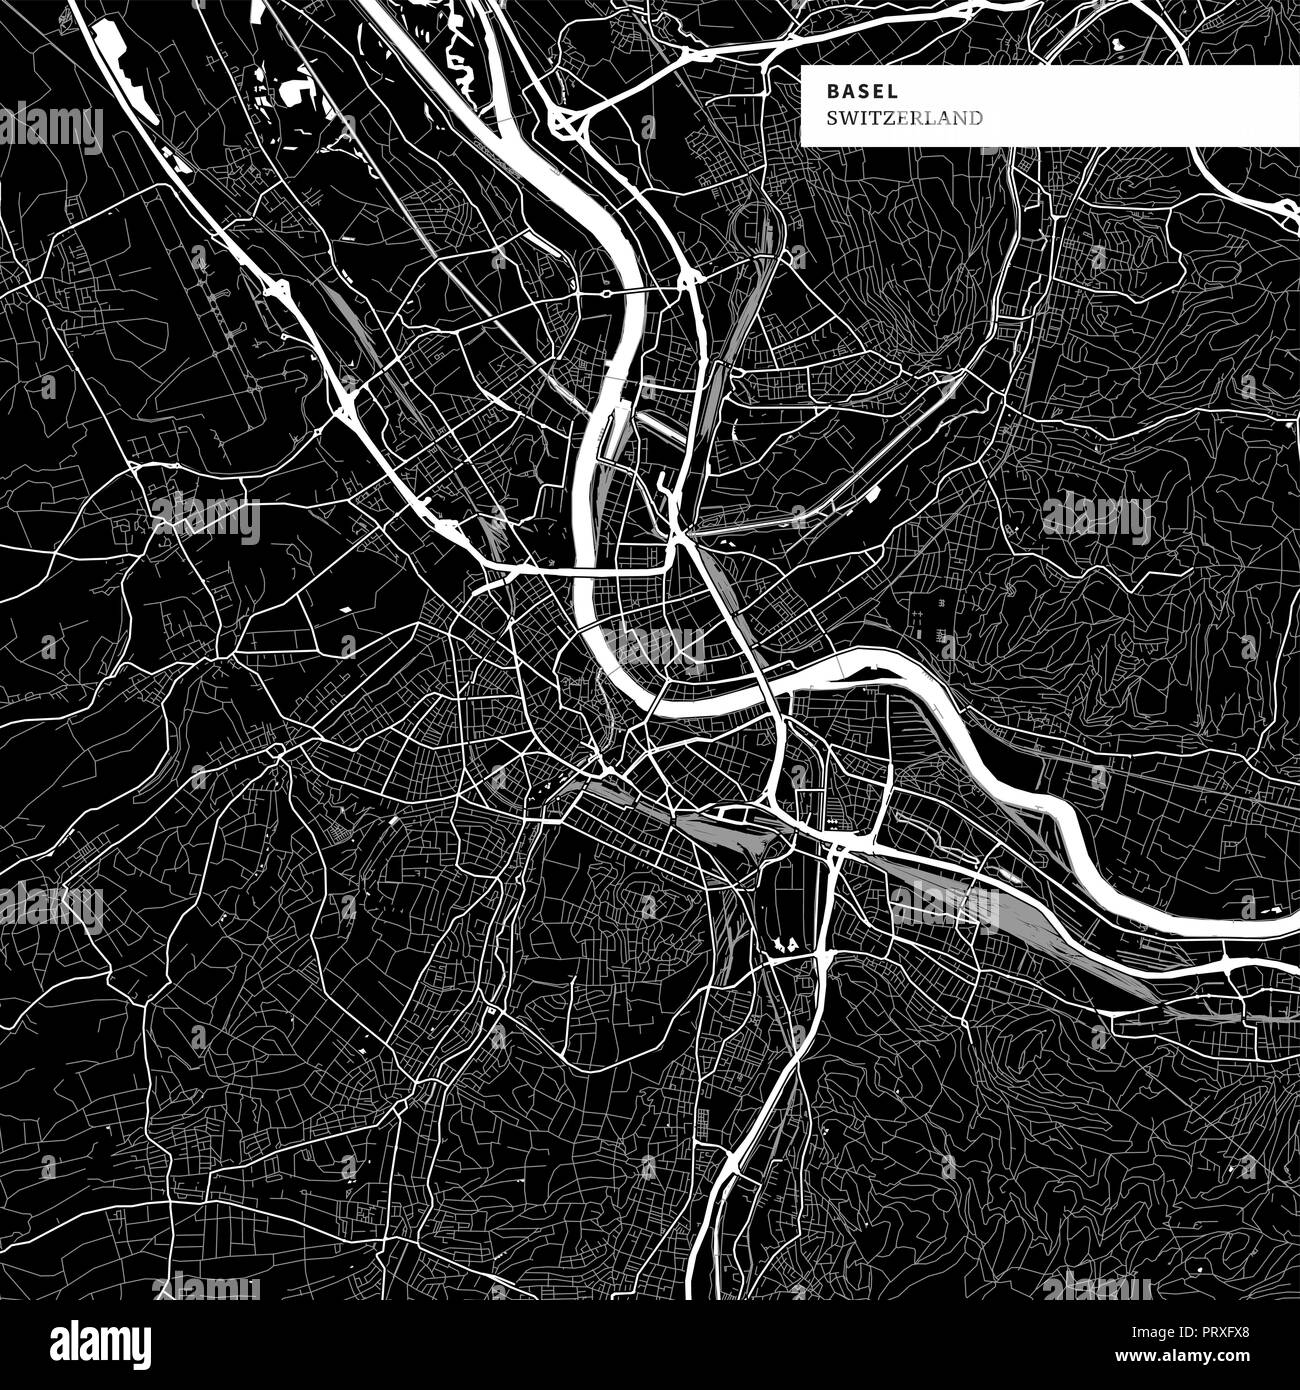 Stadtplan von Basel, Schweiz mit typischen städtischen Wahrzeichen wie Gebäude, Straßen, Wasserwege und Eisenbahnen sowie kleinere Straßen und Parks Trails. Stock Vektor